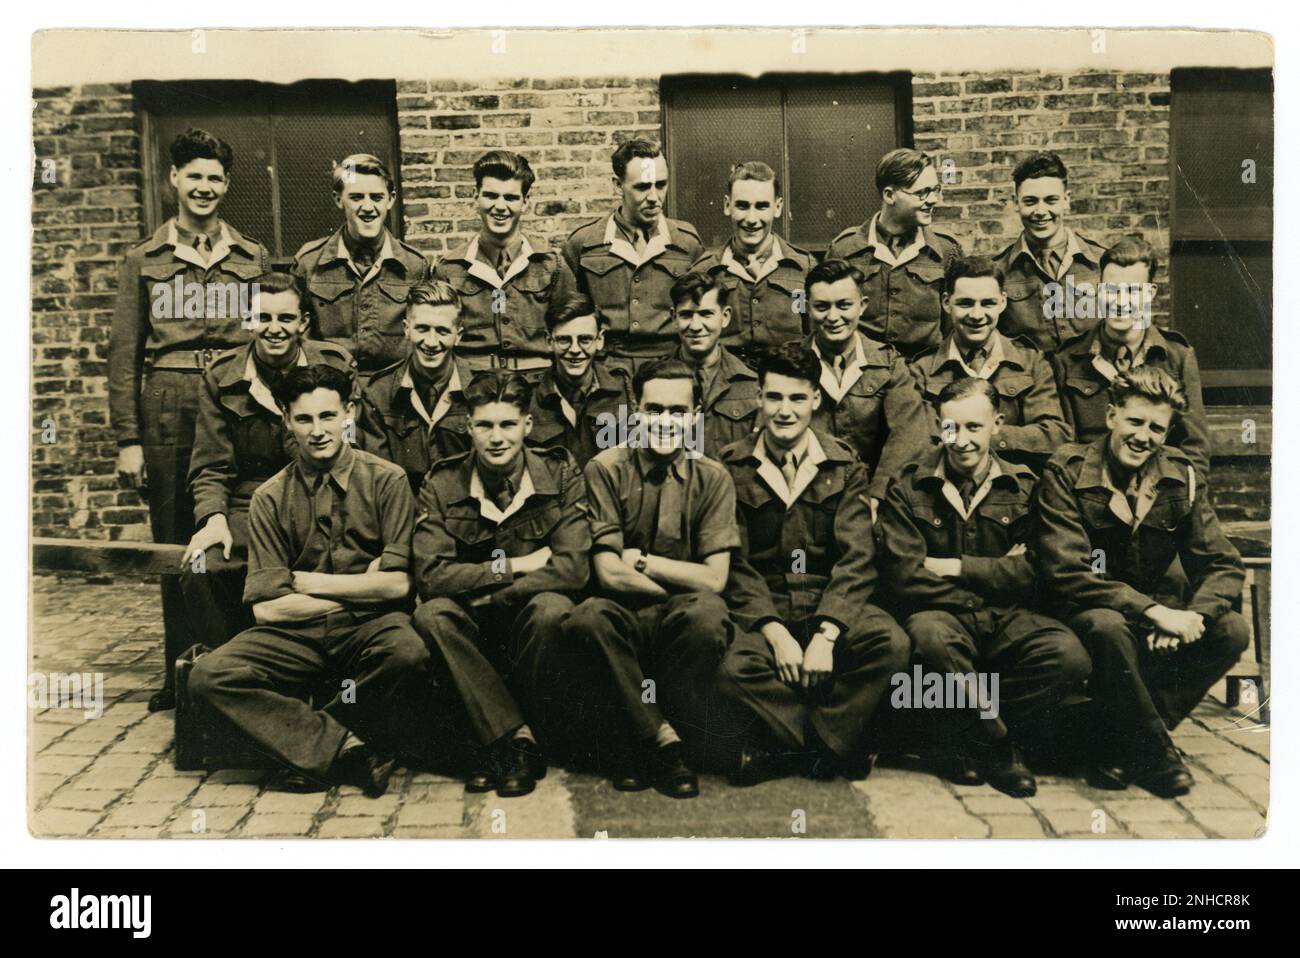 Photographie de groupe originale de WW2 ans de jeunes hommes, éventuellement du corps d'entraînement de la RAF, du corps de défense des cadets de l'Air / de la jeunesse en uniforme bleu. avec revers blancs. Beaucoup de personnages, qui ont l'air heureux. Vers 1940, Royaume-Uni Banque D'Images